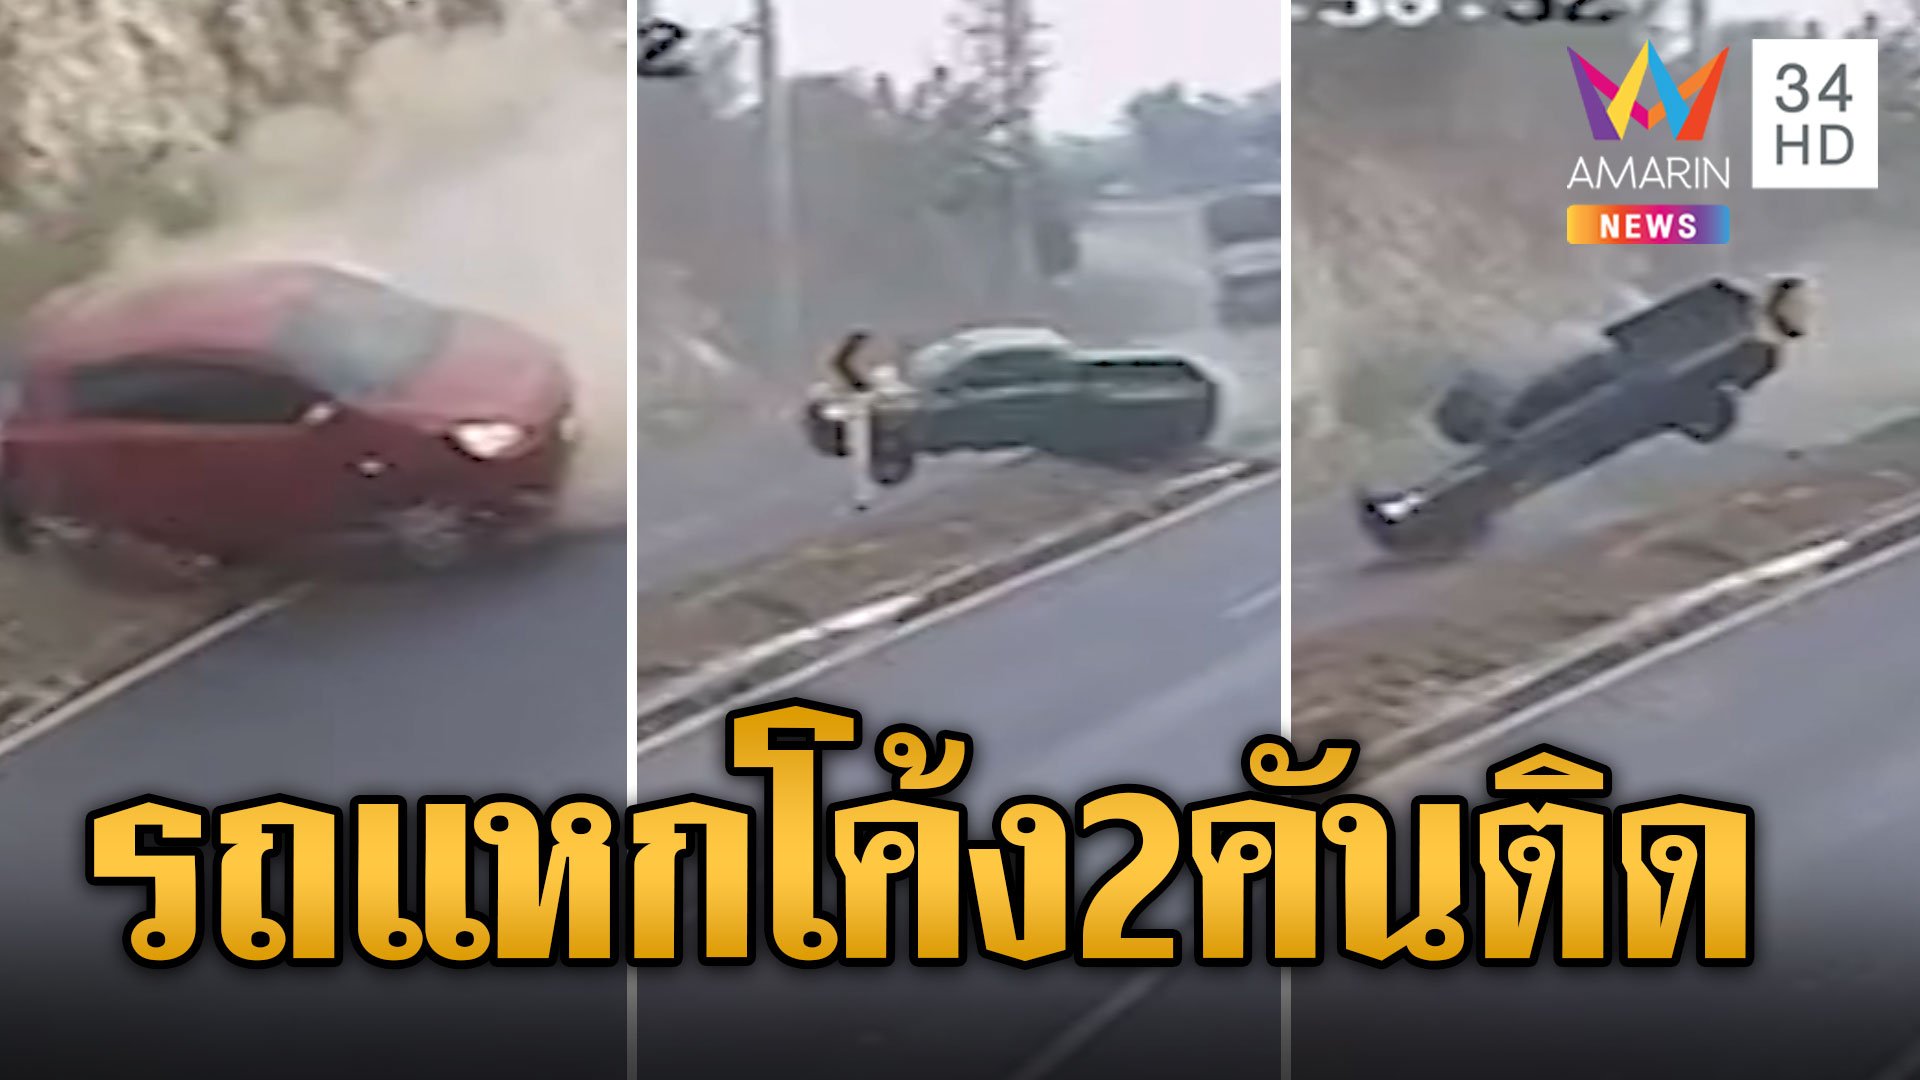 โค้งอันตราย! รถยนต์ลื่นไถลชนเกาะกลาง 2 คันติด | ข่าวอรุณอมรินทร์ | 14 ม.ค. 67 | AMARIN TVHD34